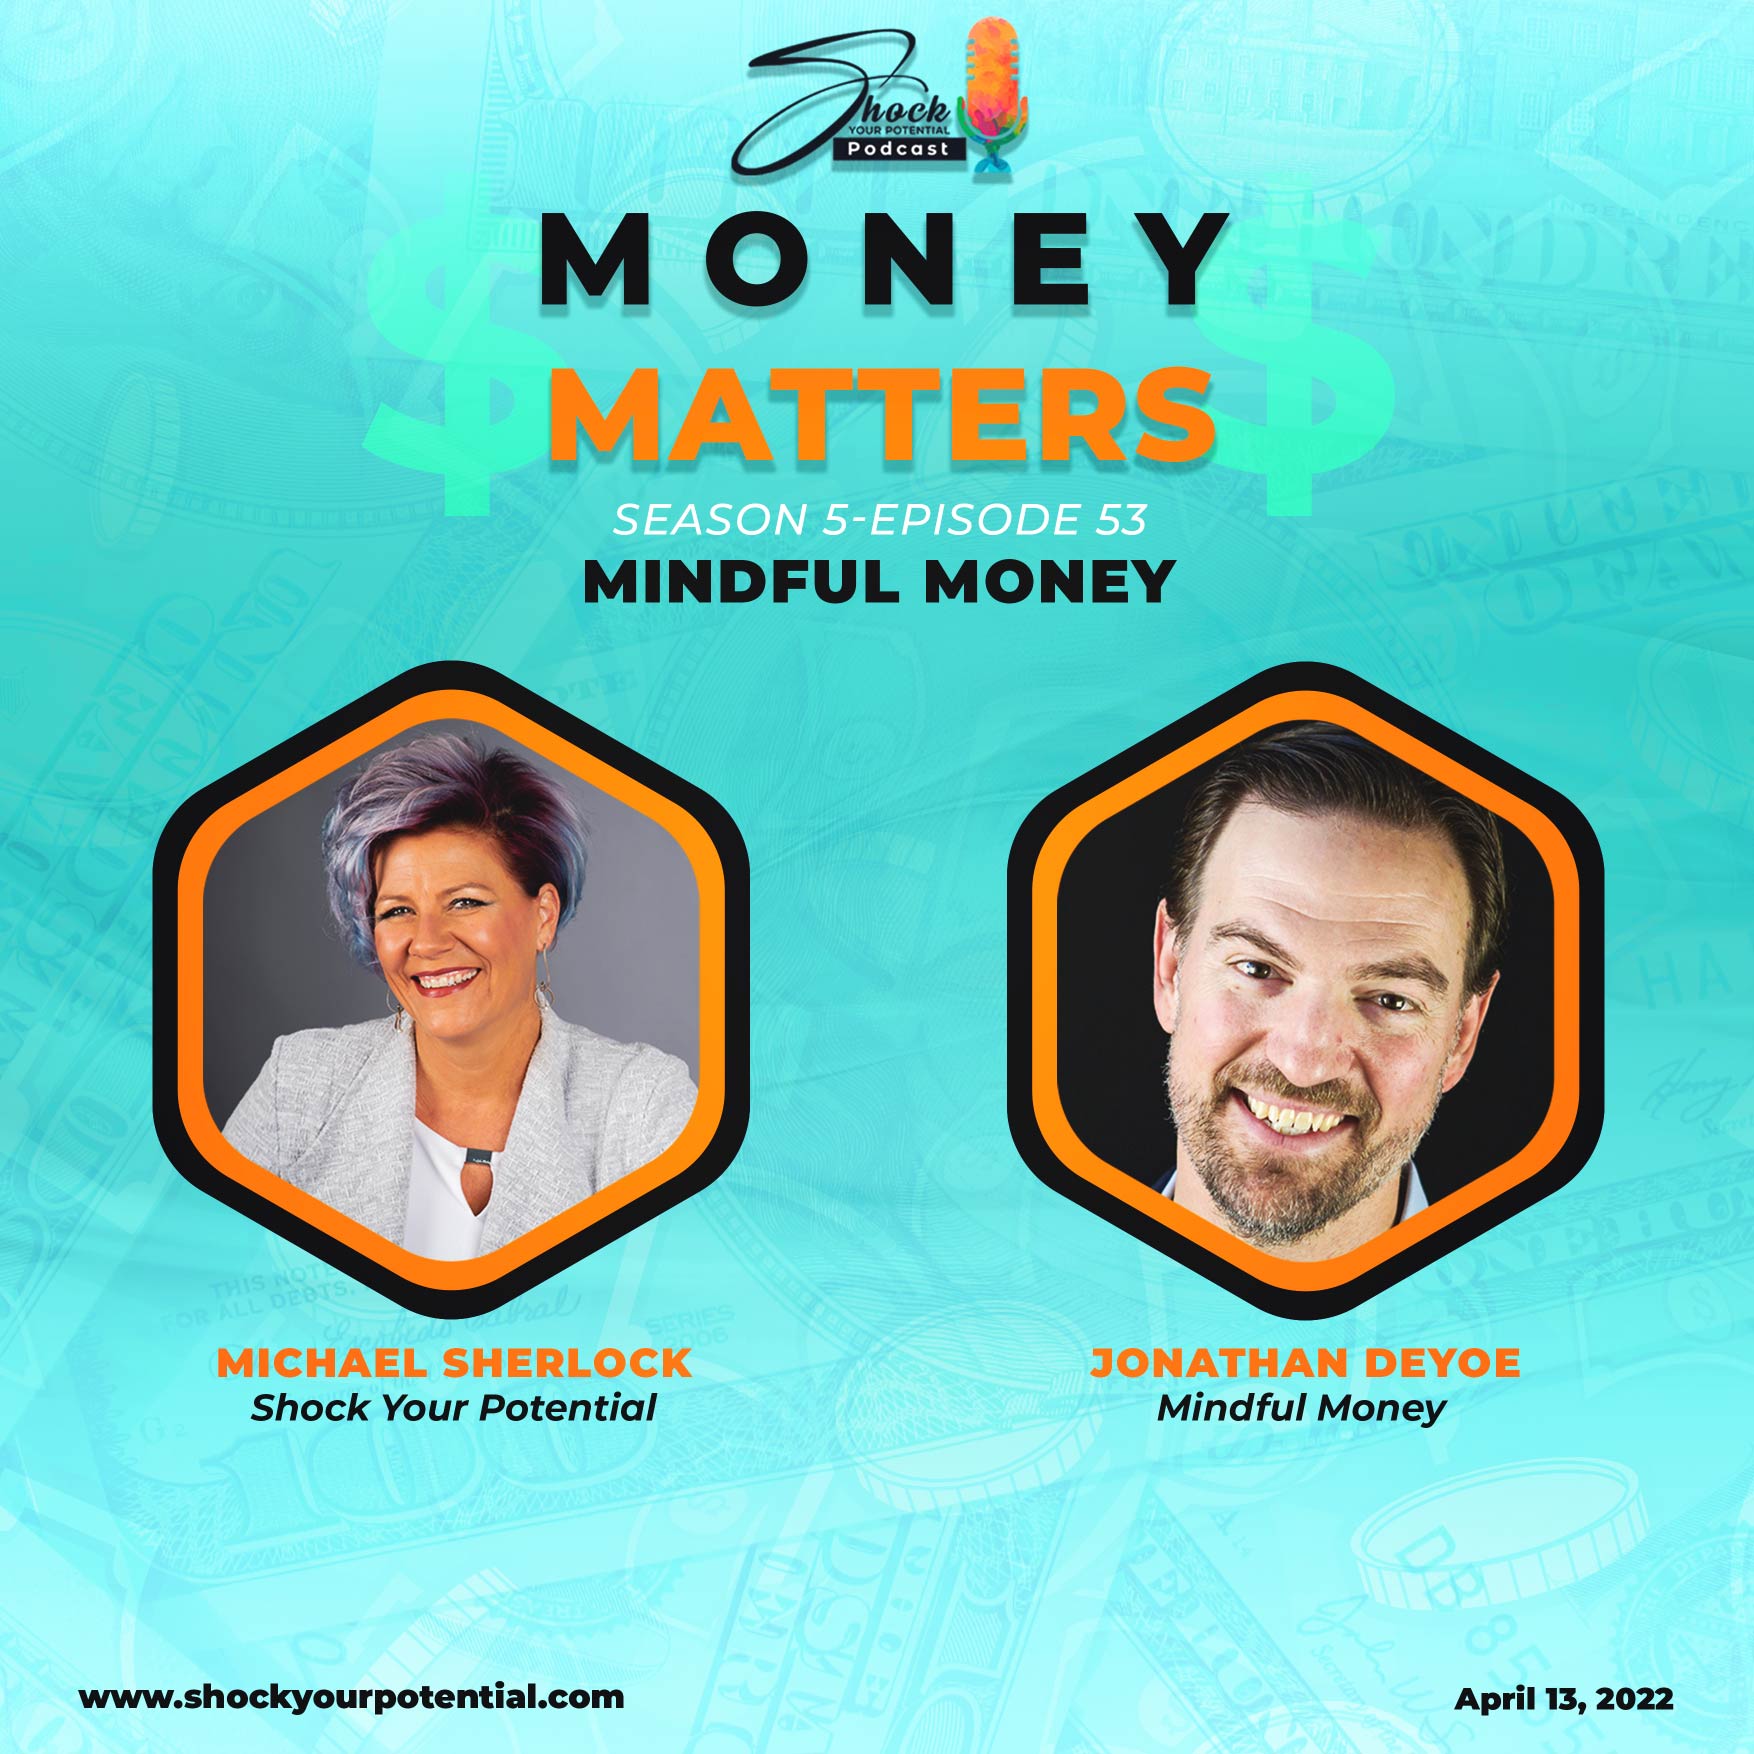 Mindful Money – Jonathan DeYoe